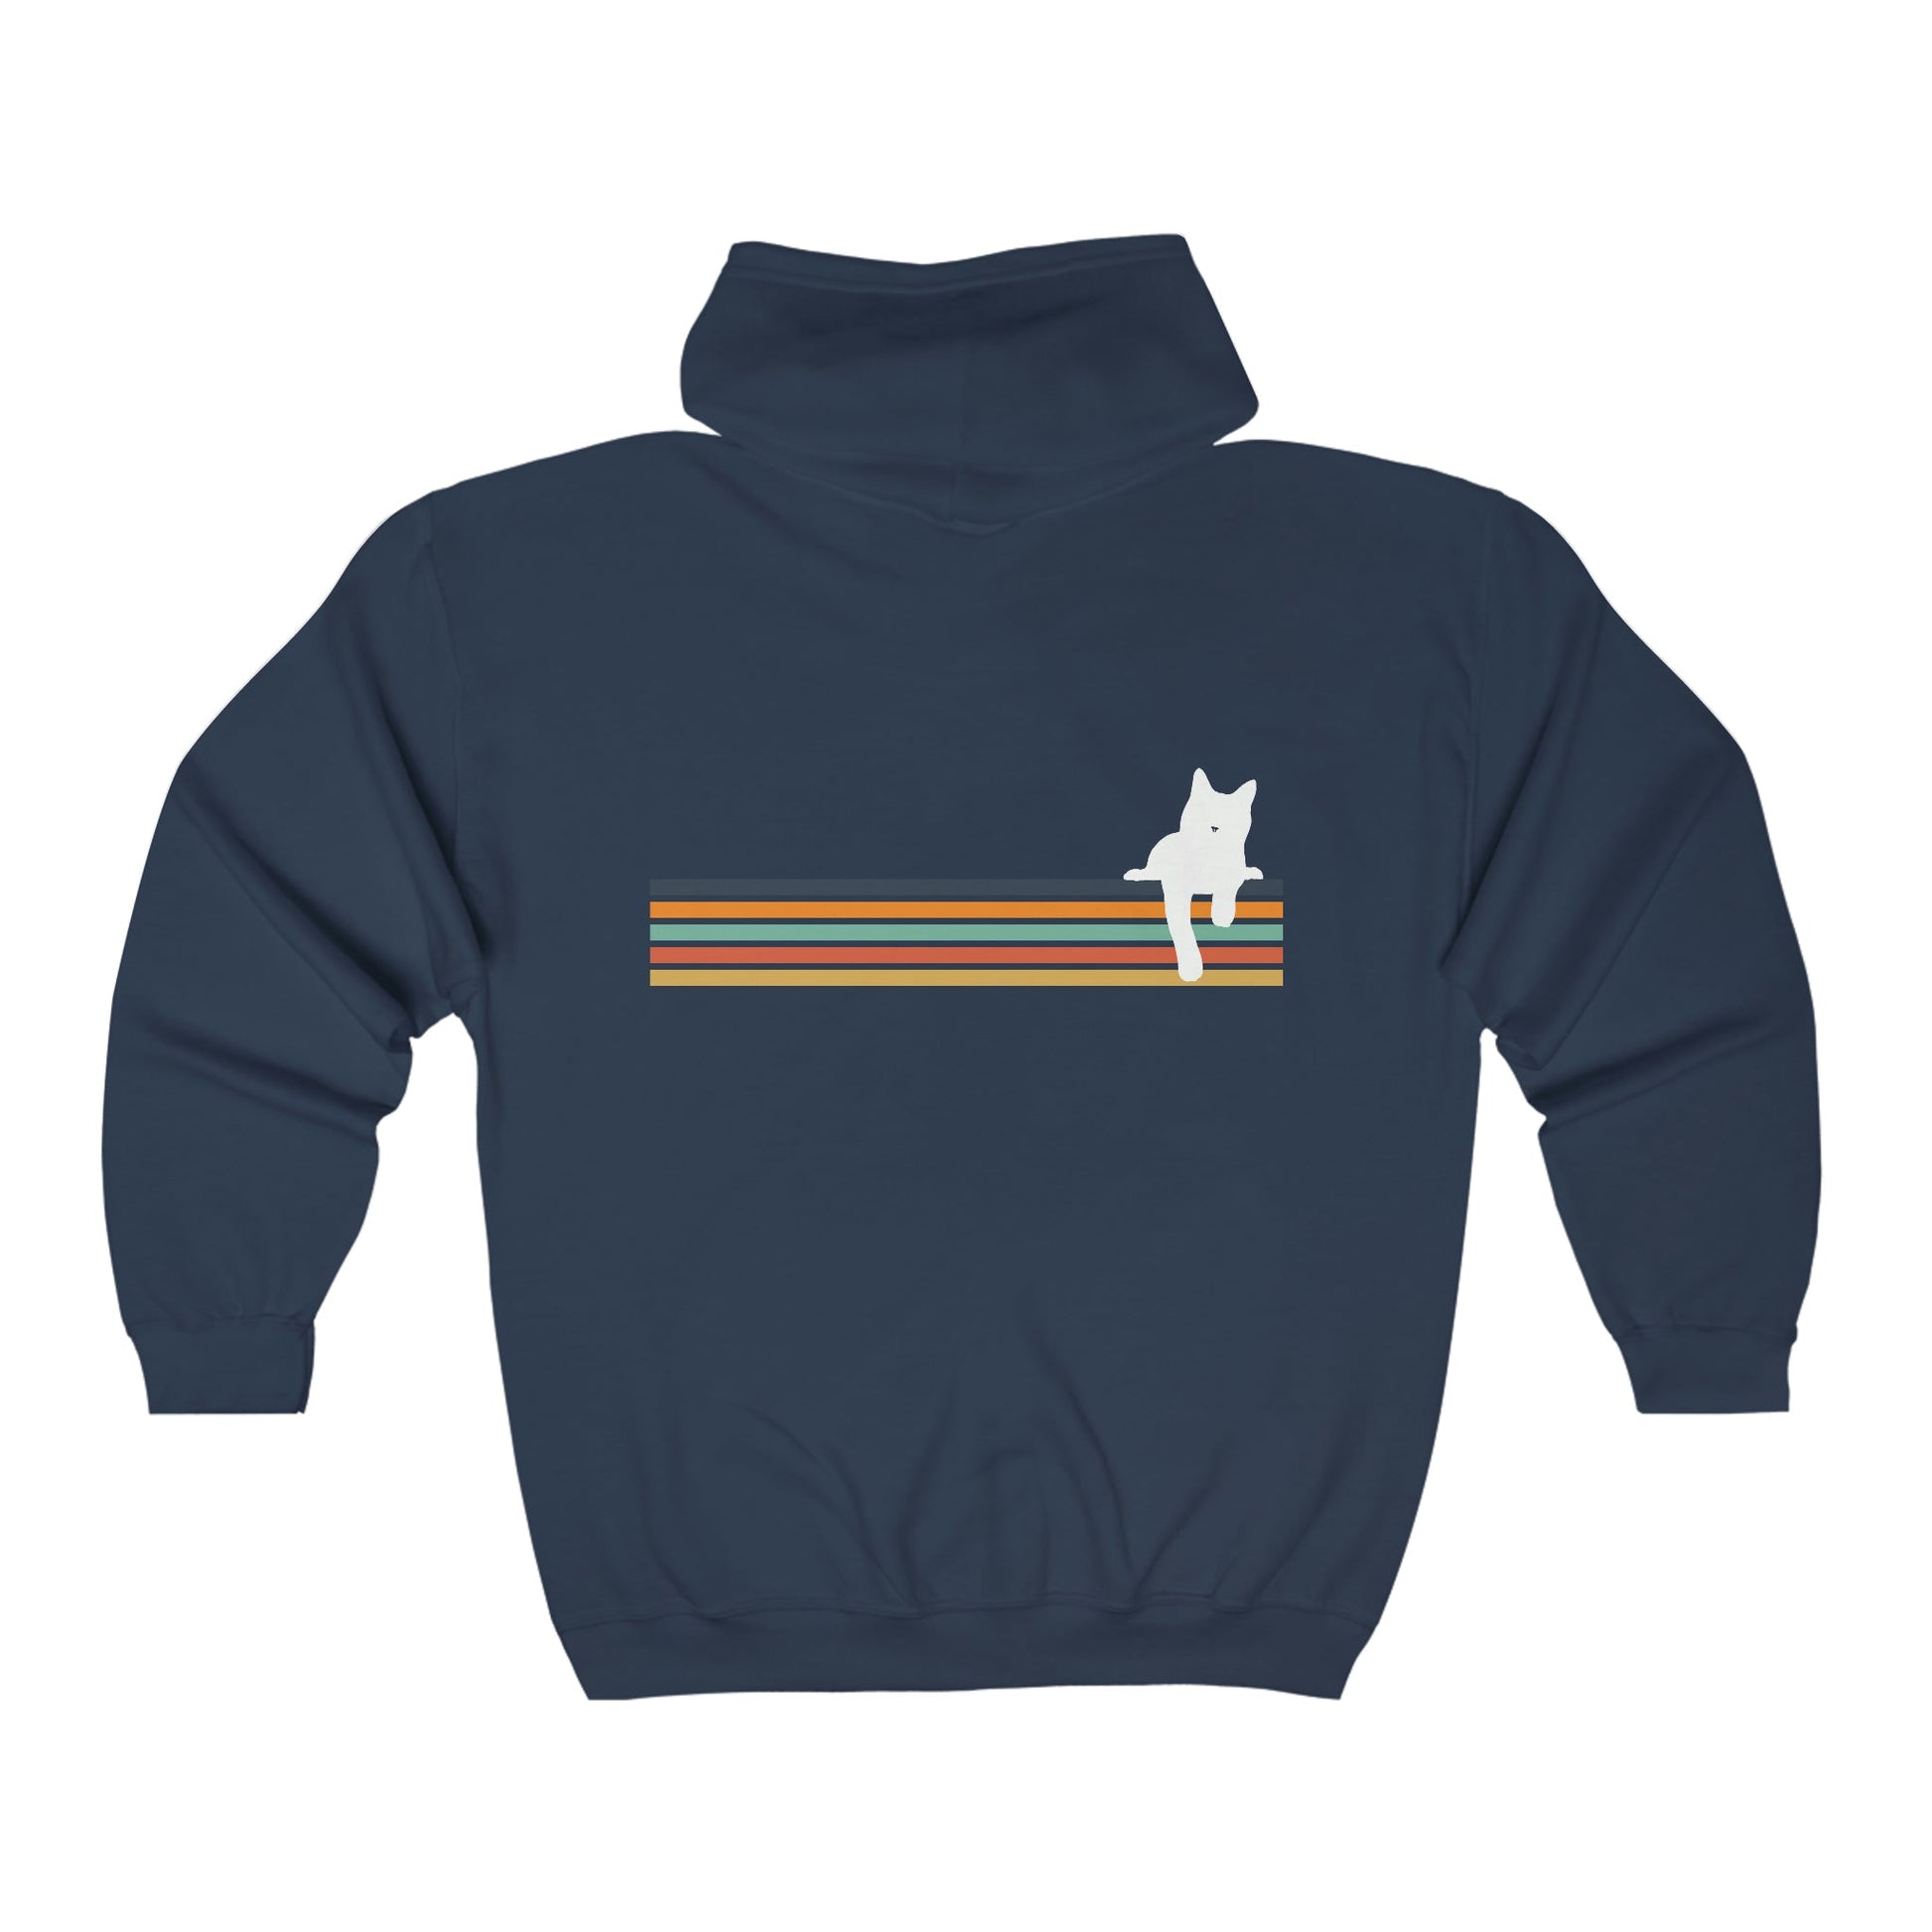 Rainbow Cat | Zip-up Sweatshirt - Detezi Designs-32844027649211118760